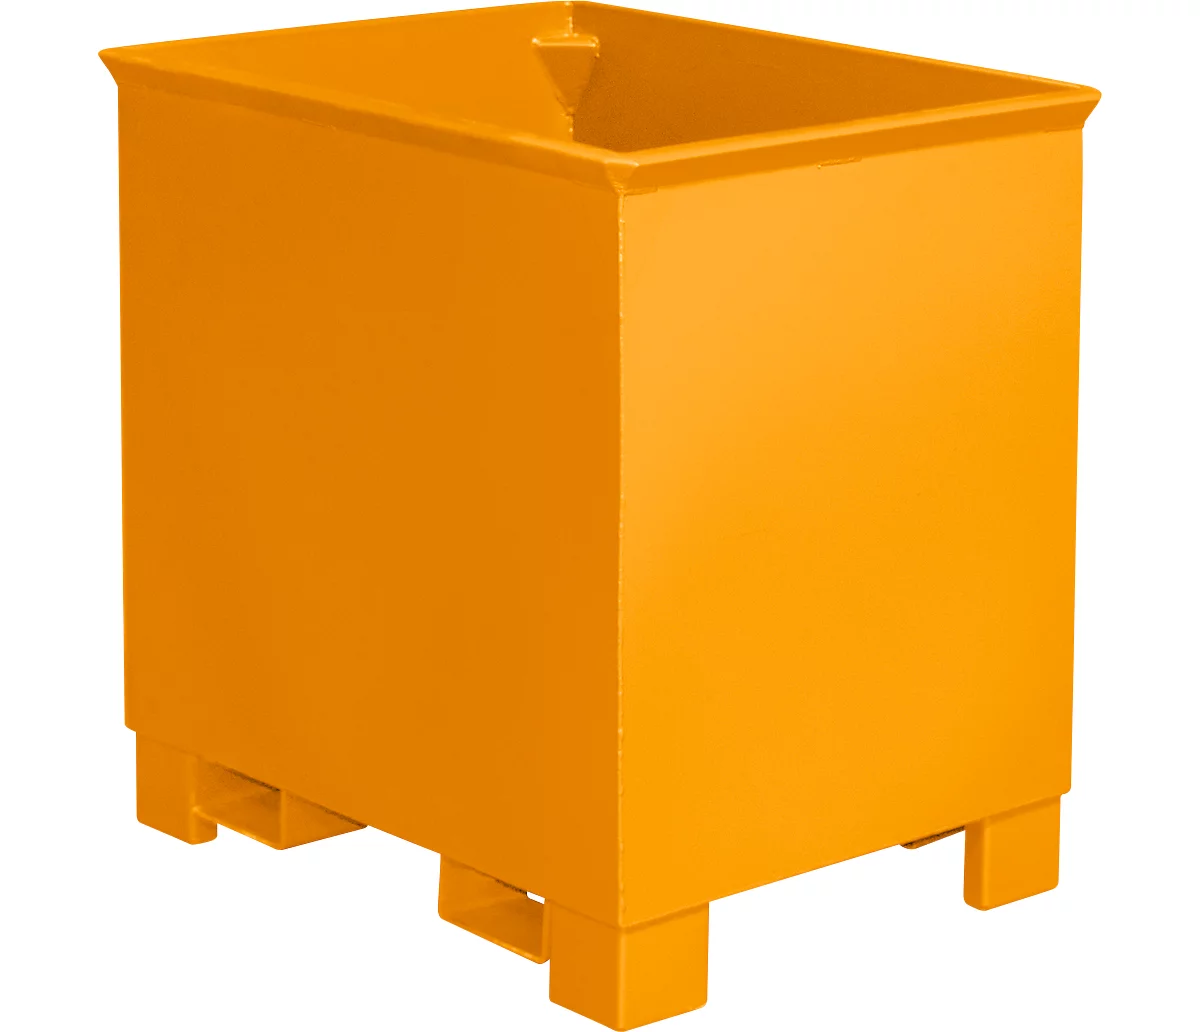 Contenedor para trenes logísticos tipo C 80, para sólidos, apilable hasta 3 unidades, capacidad 0,8 m³, hasta 1000 kg, amarillo anaranjado RAL 2000